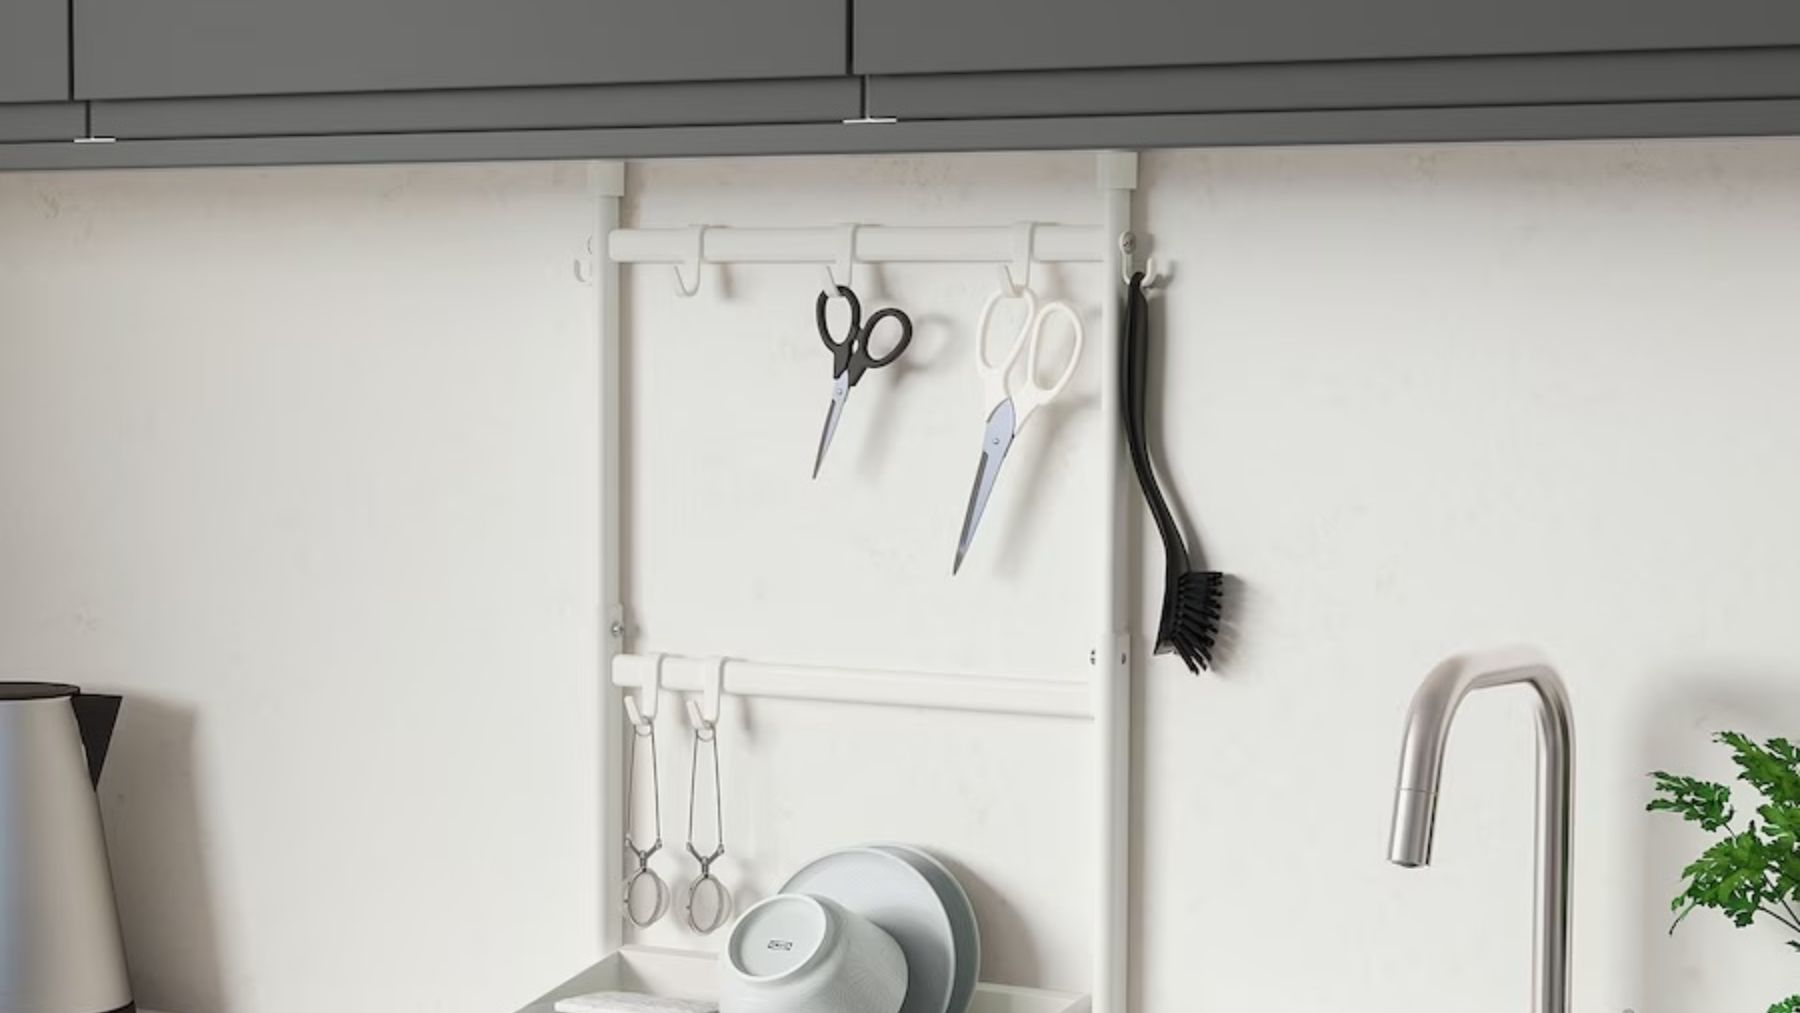 Si necesitas ayuda para mantener tu cocina ordenada, IKEA tiene